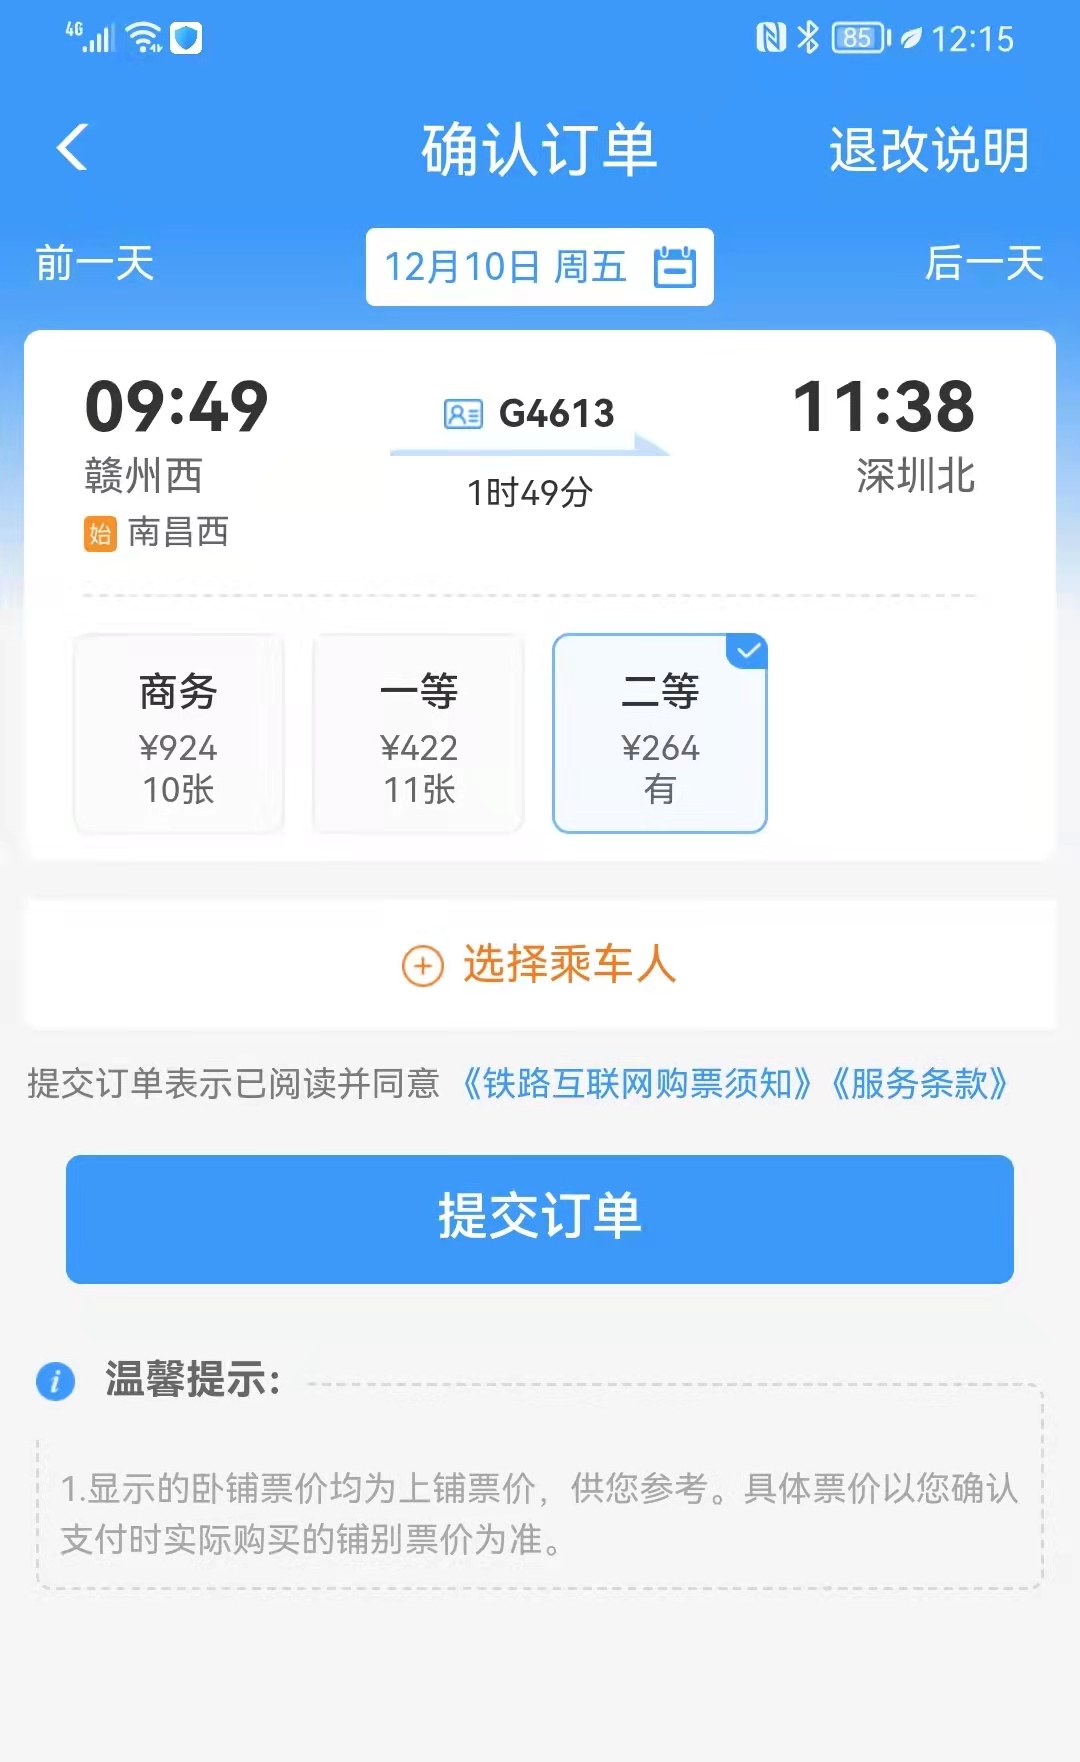 赣深高铁12月10日开通赣州至深圳最快1小时49分钟票价264元